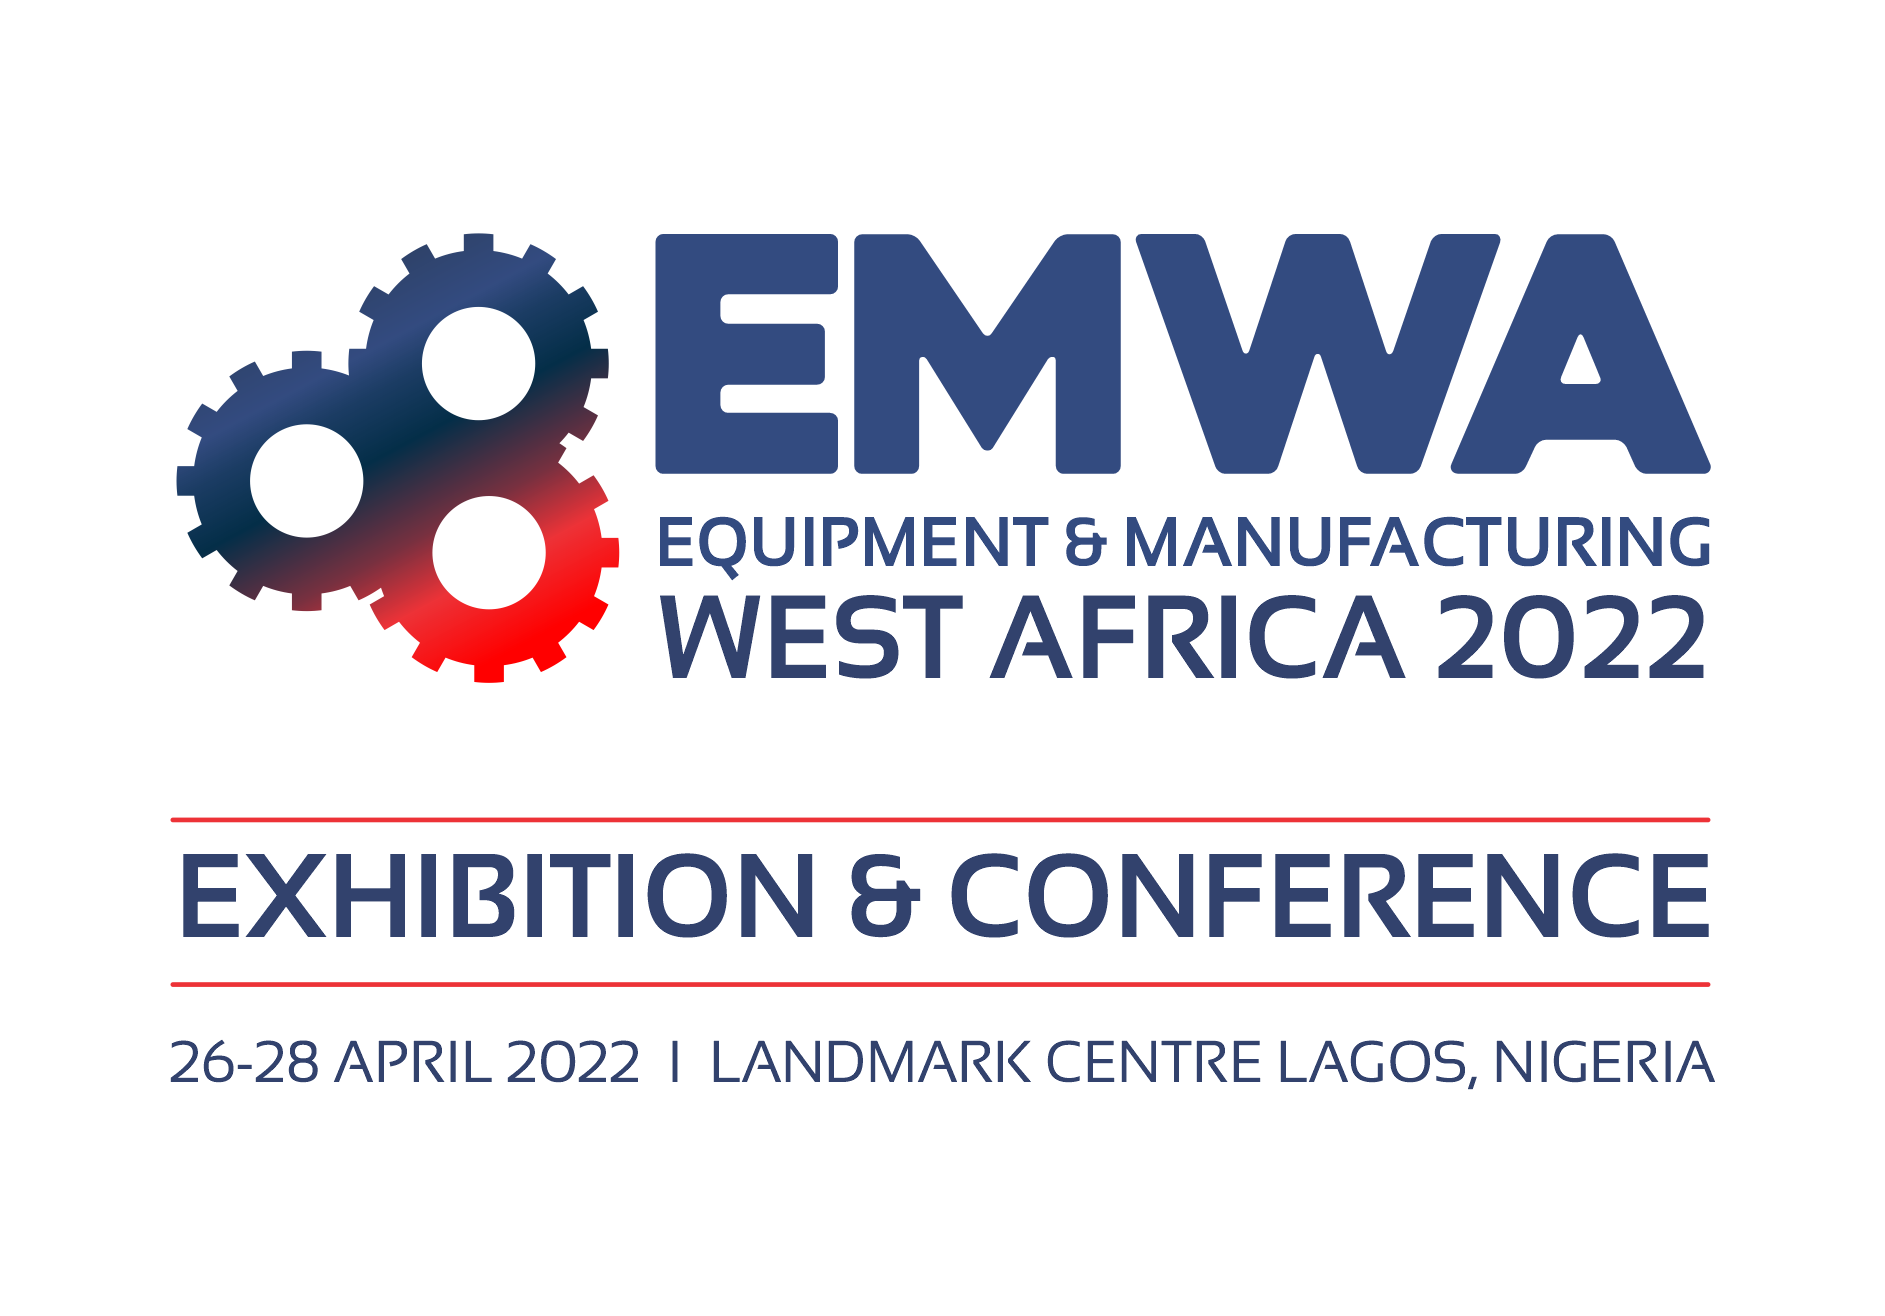 Equipment & Manufacturing West Africa, Victoria Island, Lagos, Nigeria